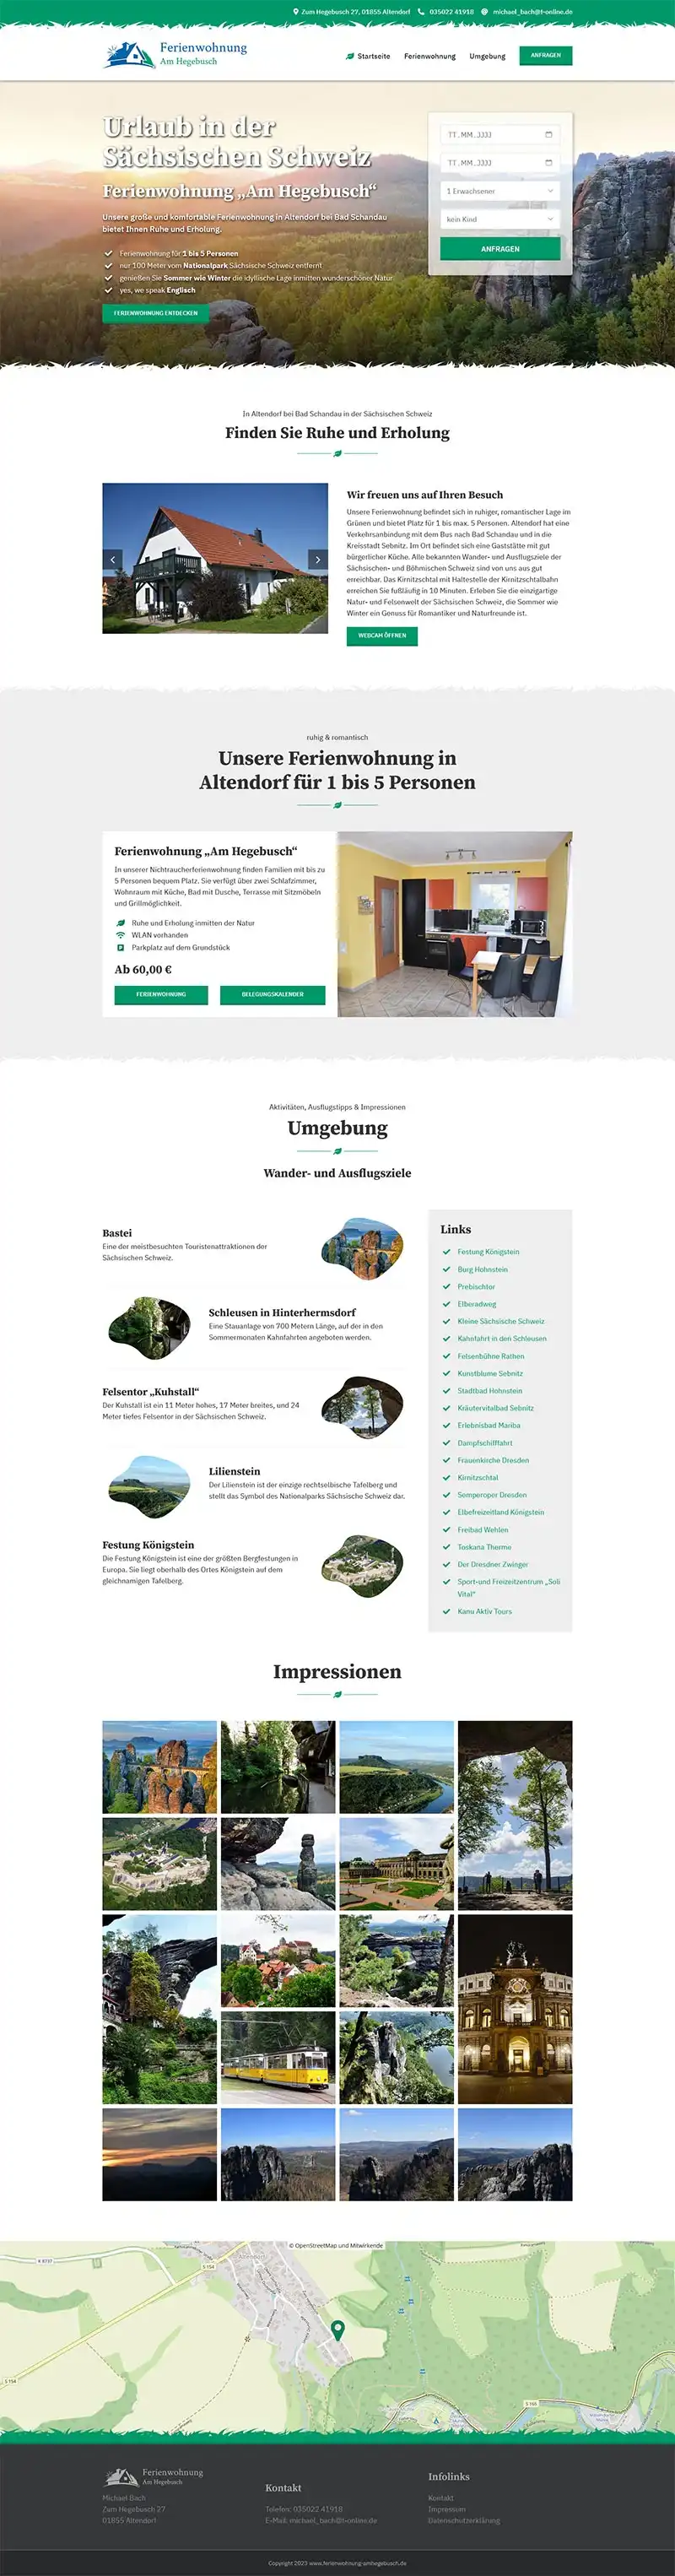 Fewo-Webseite - Websites für Ferienwohnungen - Referenz - Ferienwohnung "Am Hegebusch" - Screenshot Fullsize Startseite